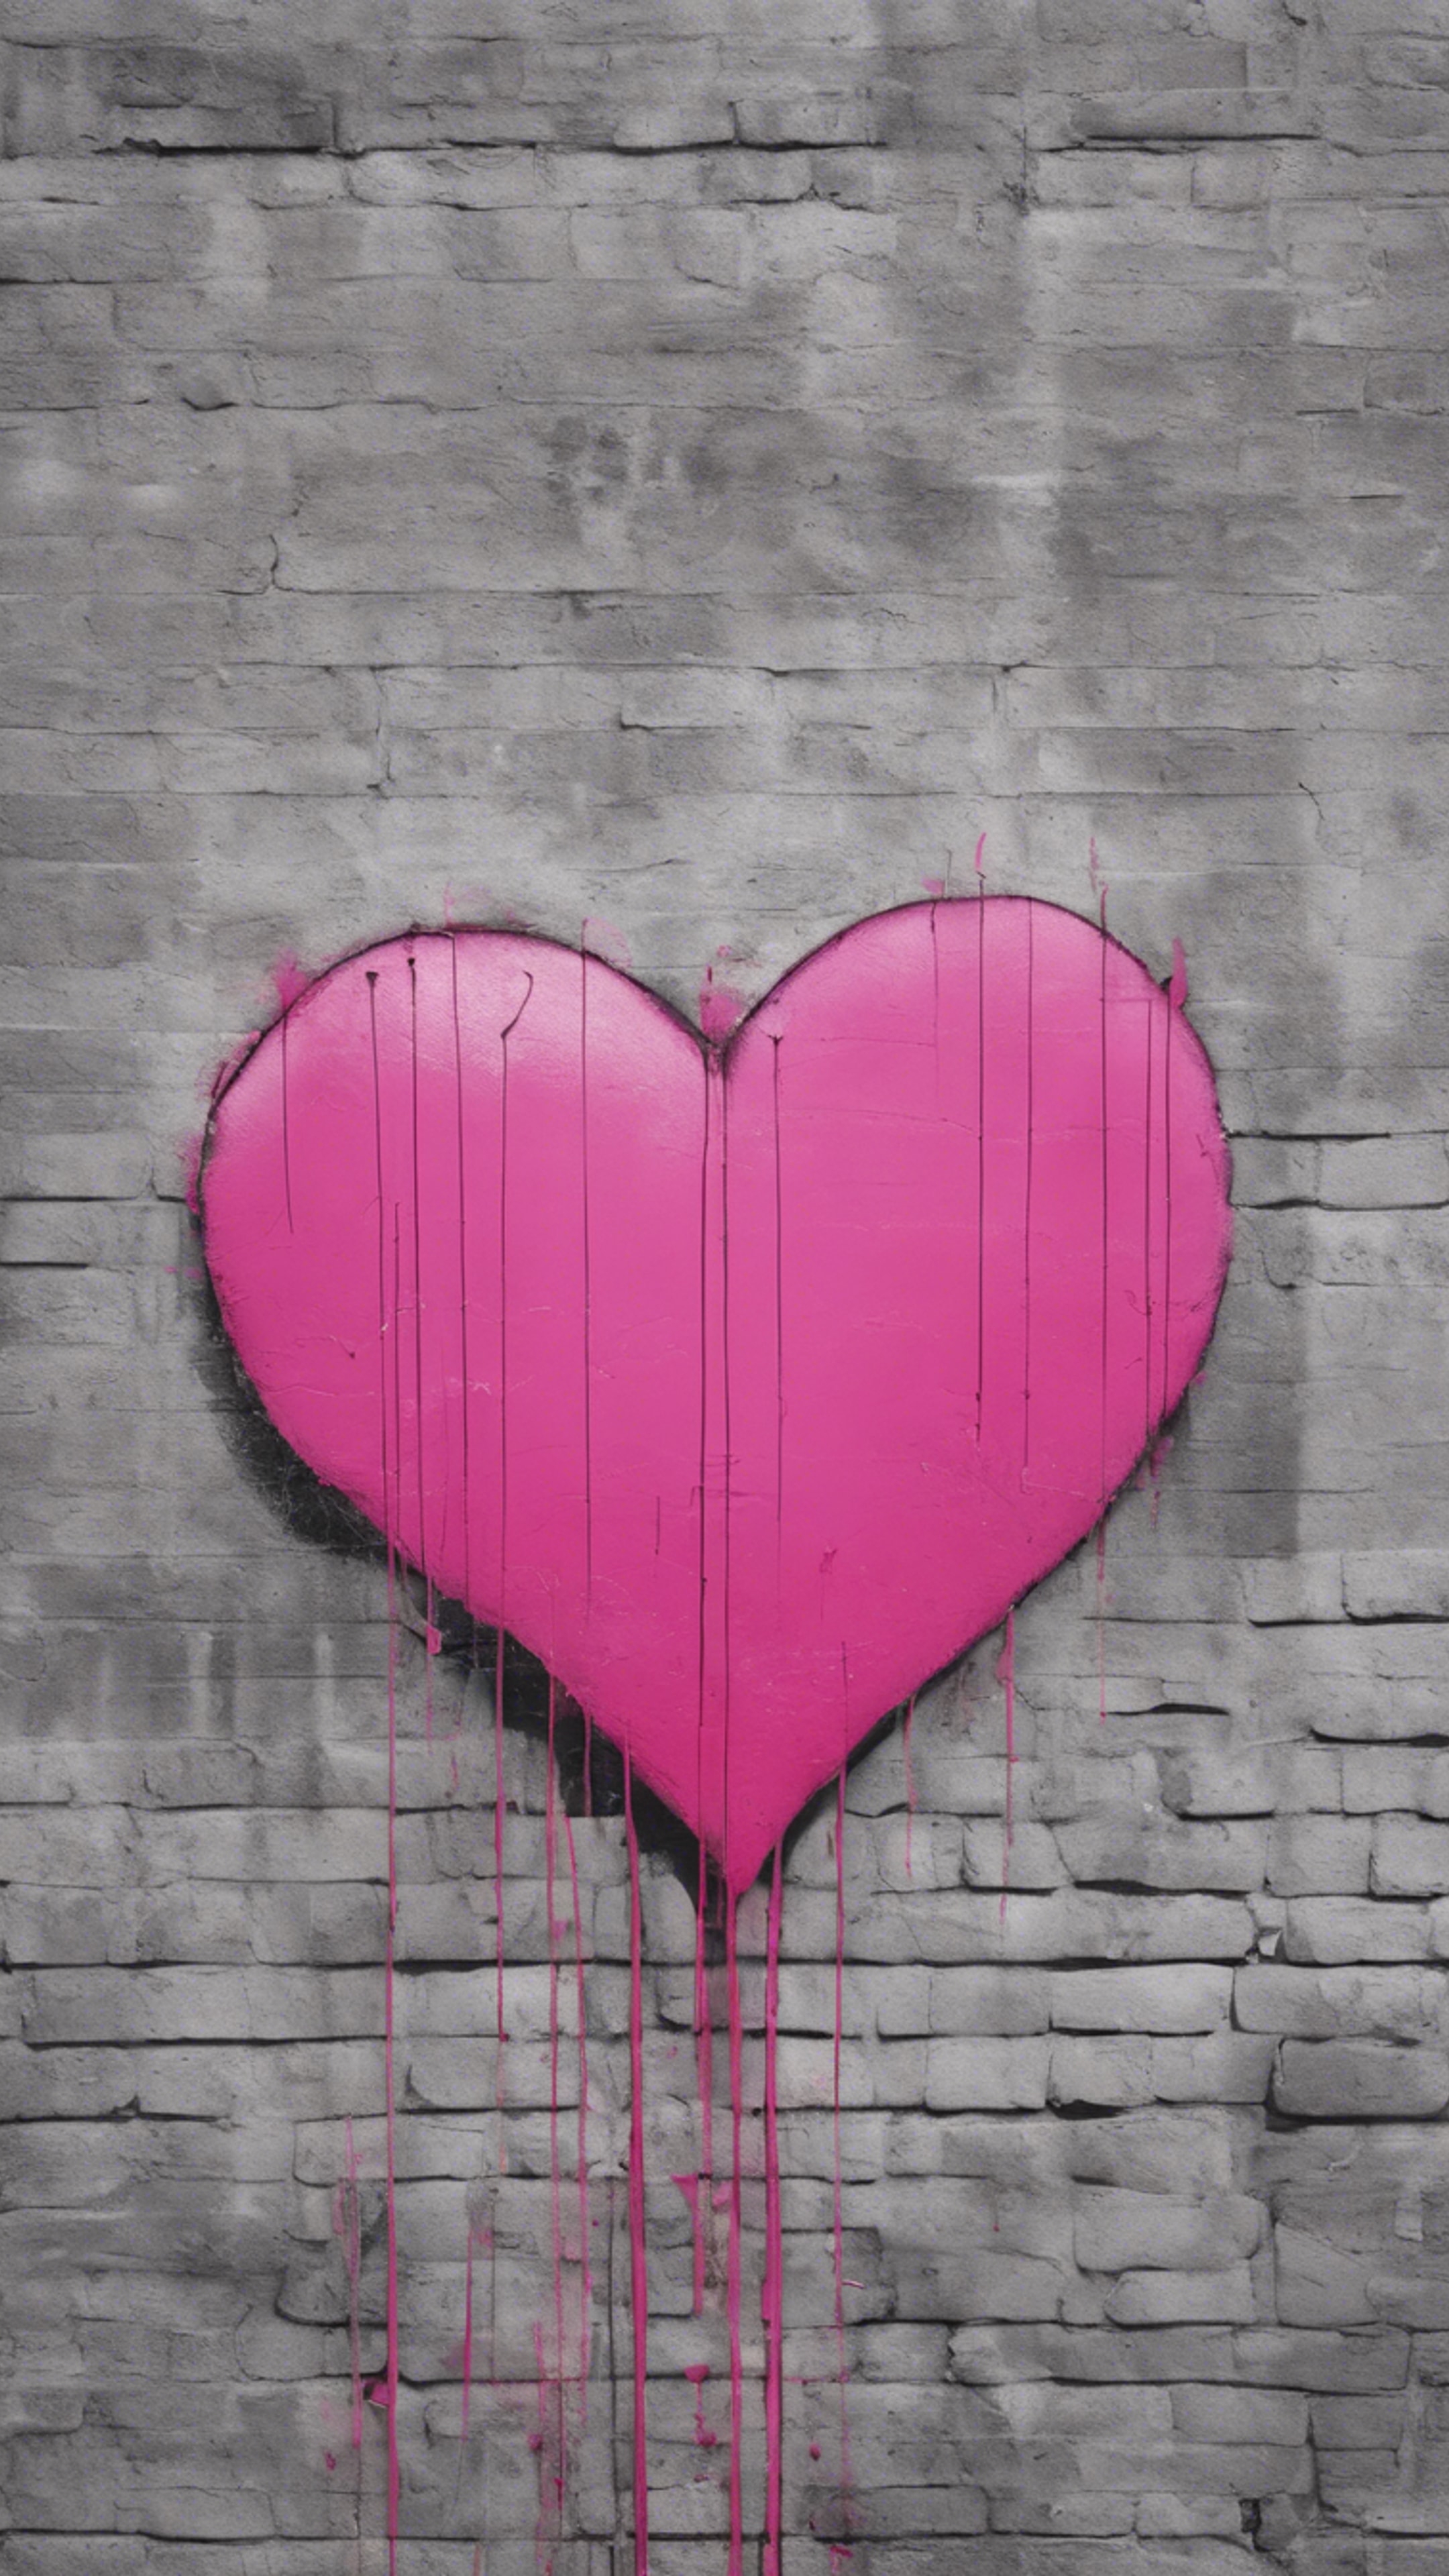 A minimalist pink heart graffiti spray painted on a city wall. Wallpaper[fd4dbafbb65a4217be27]